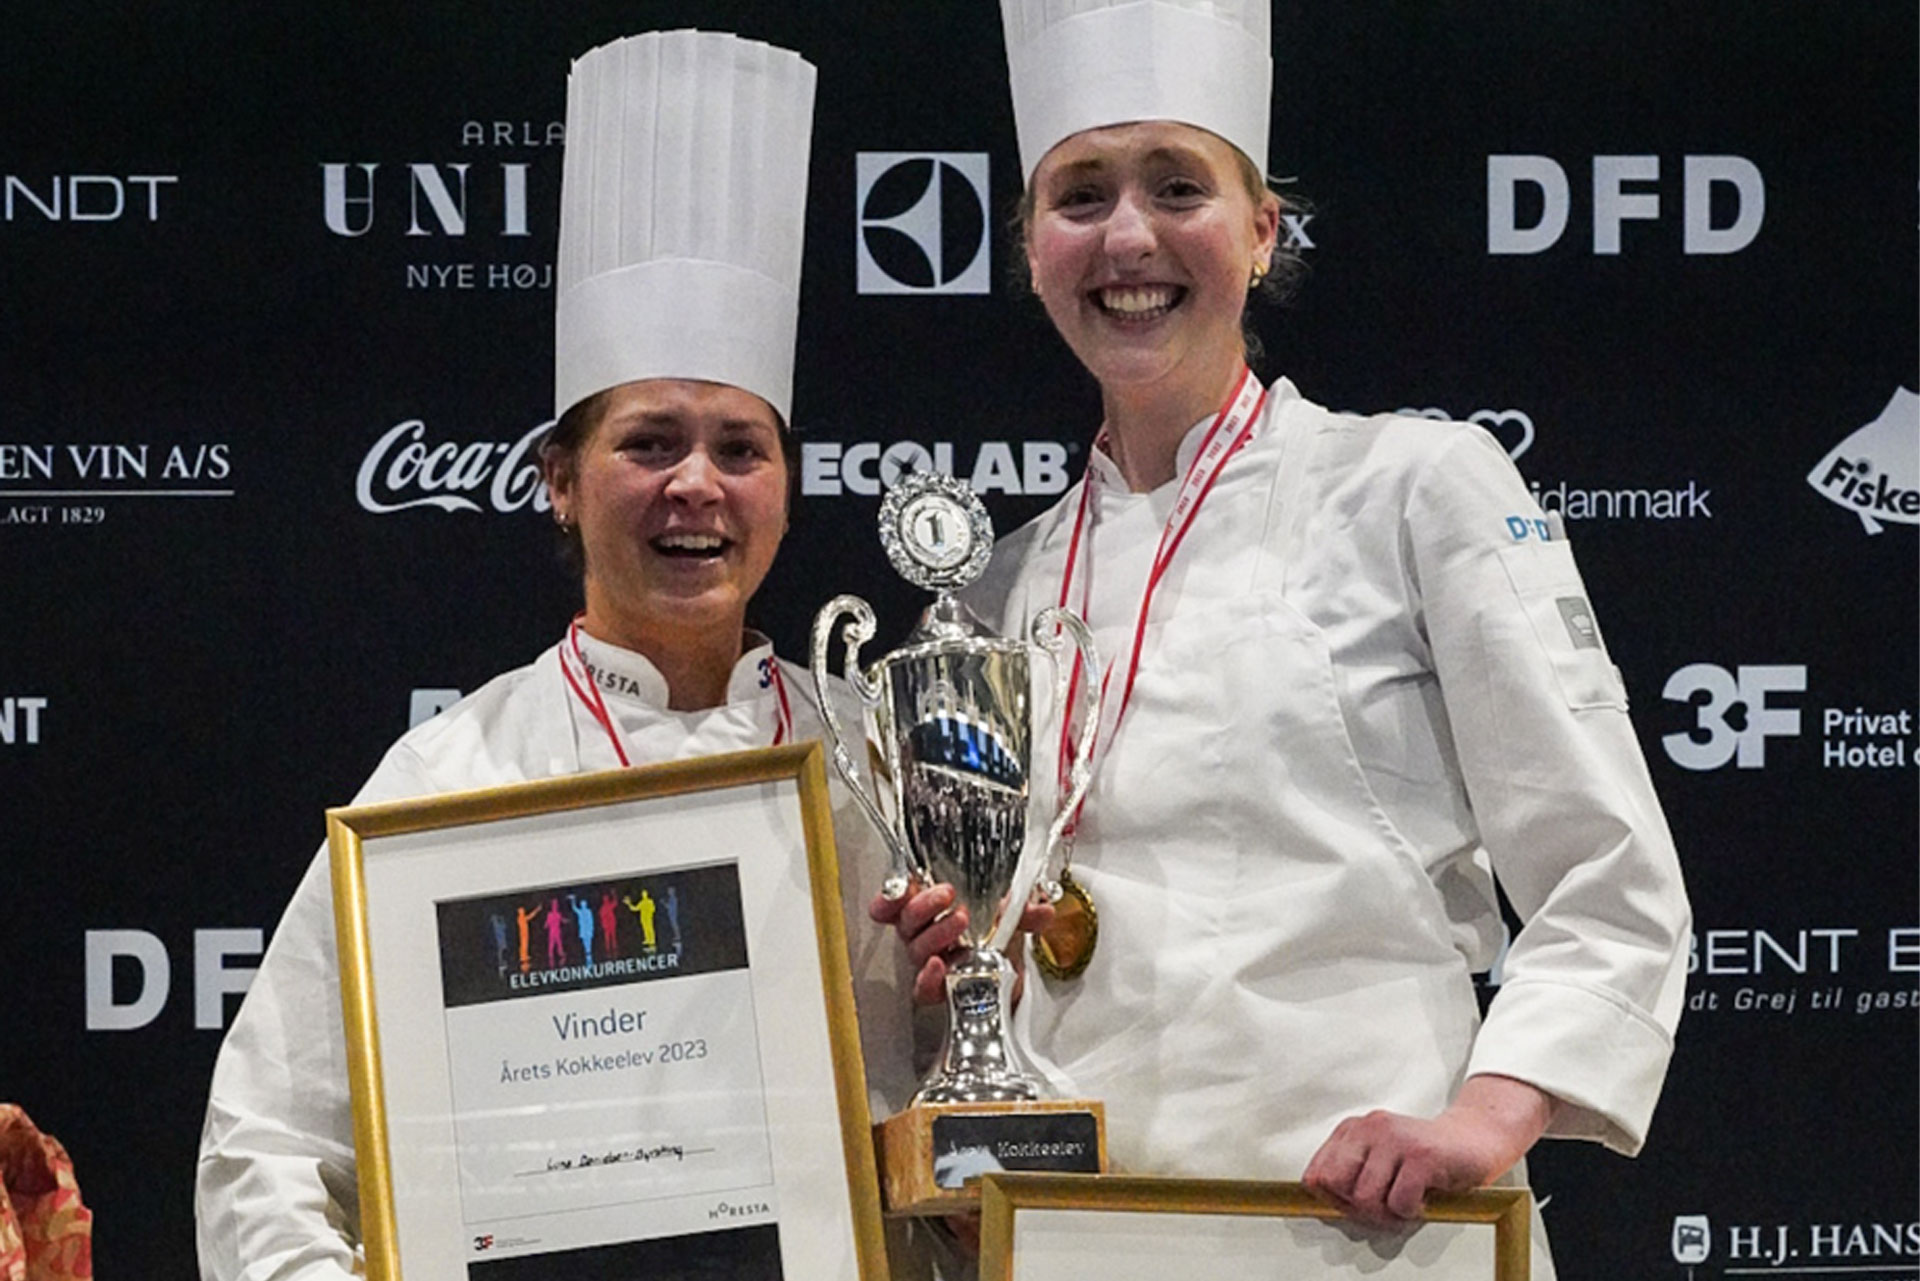 Årets kokkeelever 2023 blev Luna Danielsen-Byrsting og Mikkeline Møller Rasmussen fra ZBC